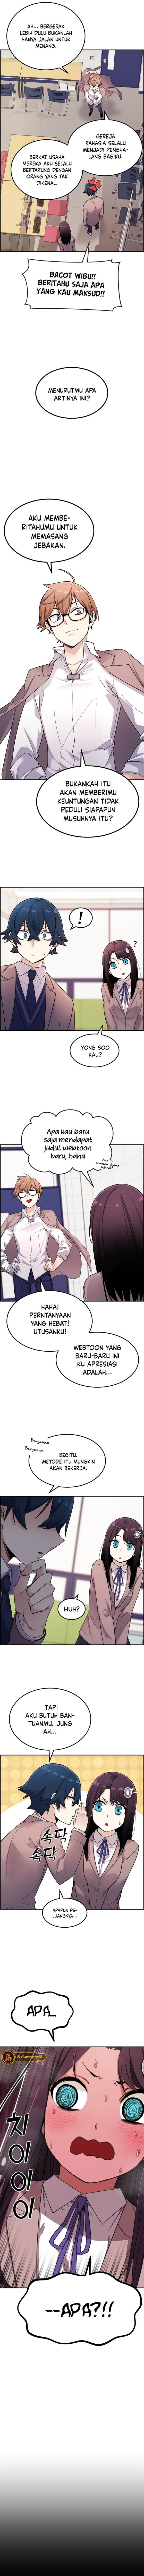 Webtoon Character Na Kang Lim Chapter 7